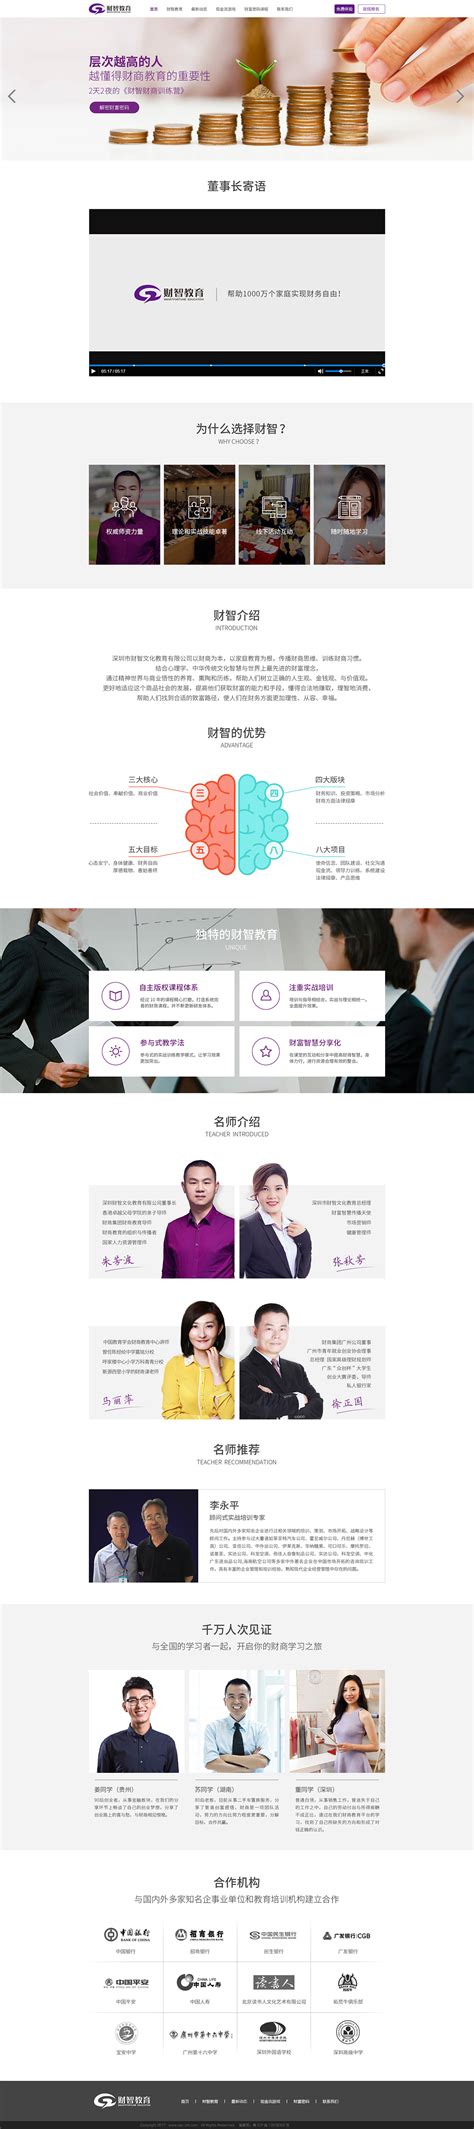 信迈医疗-深圳网站设计公司-企业建站-品牌设计-VOKO-维咖品牌咨询设计